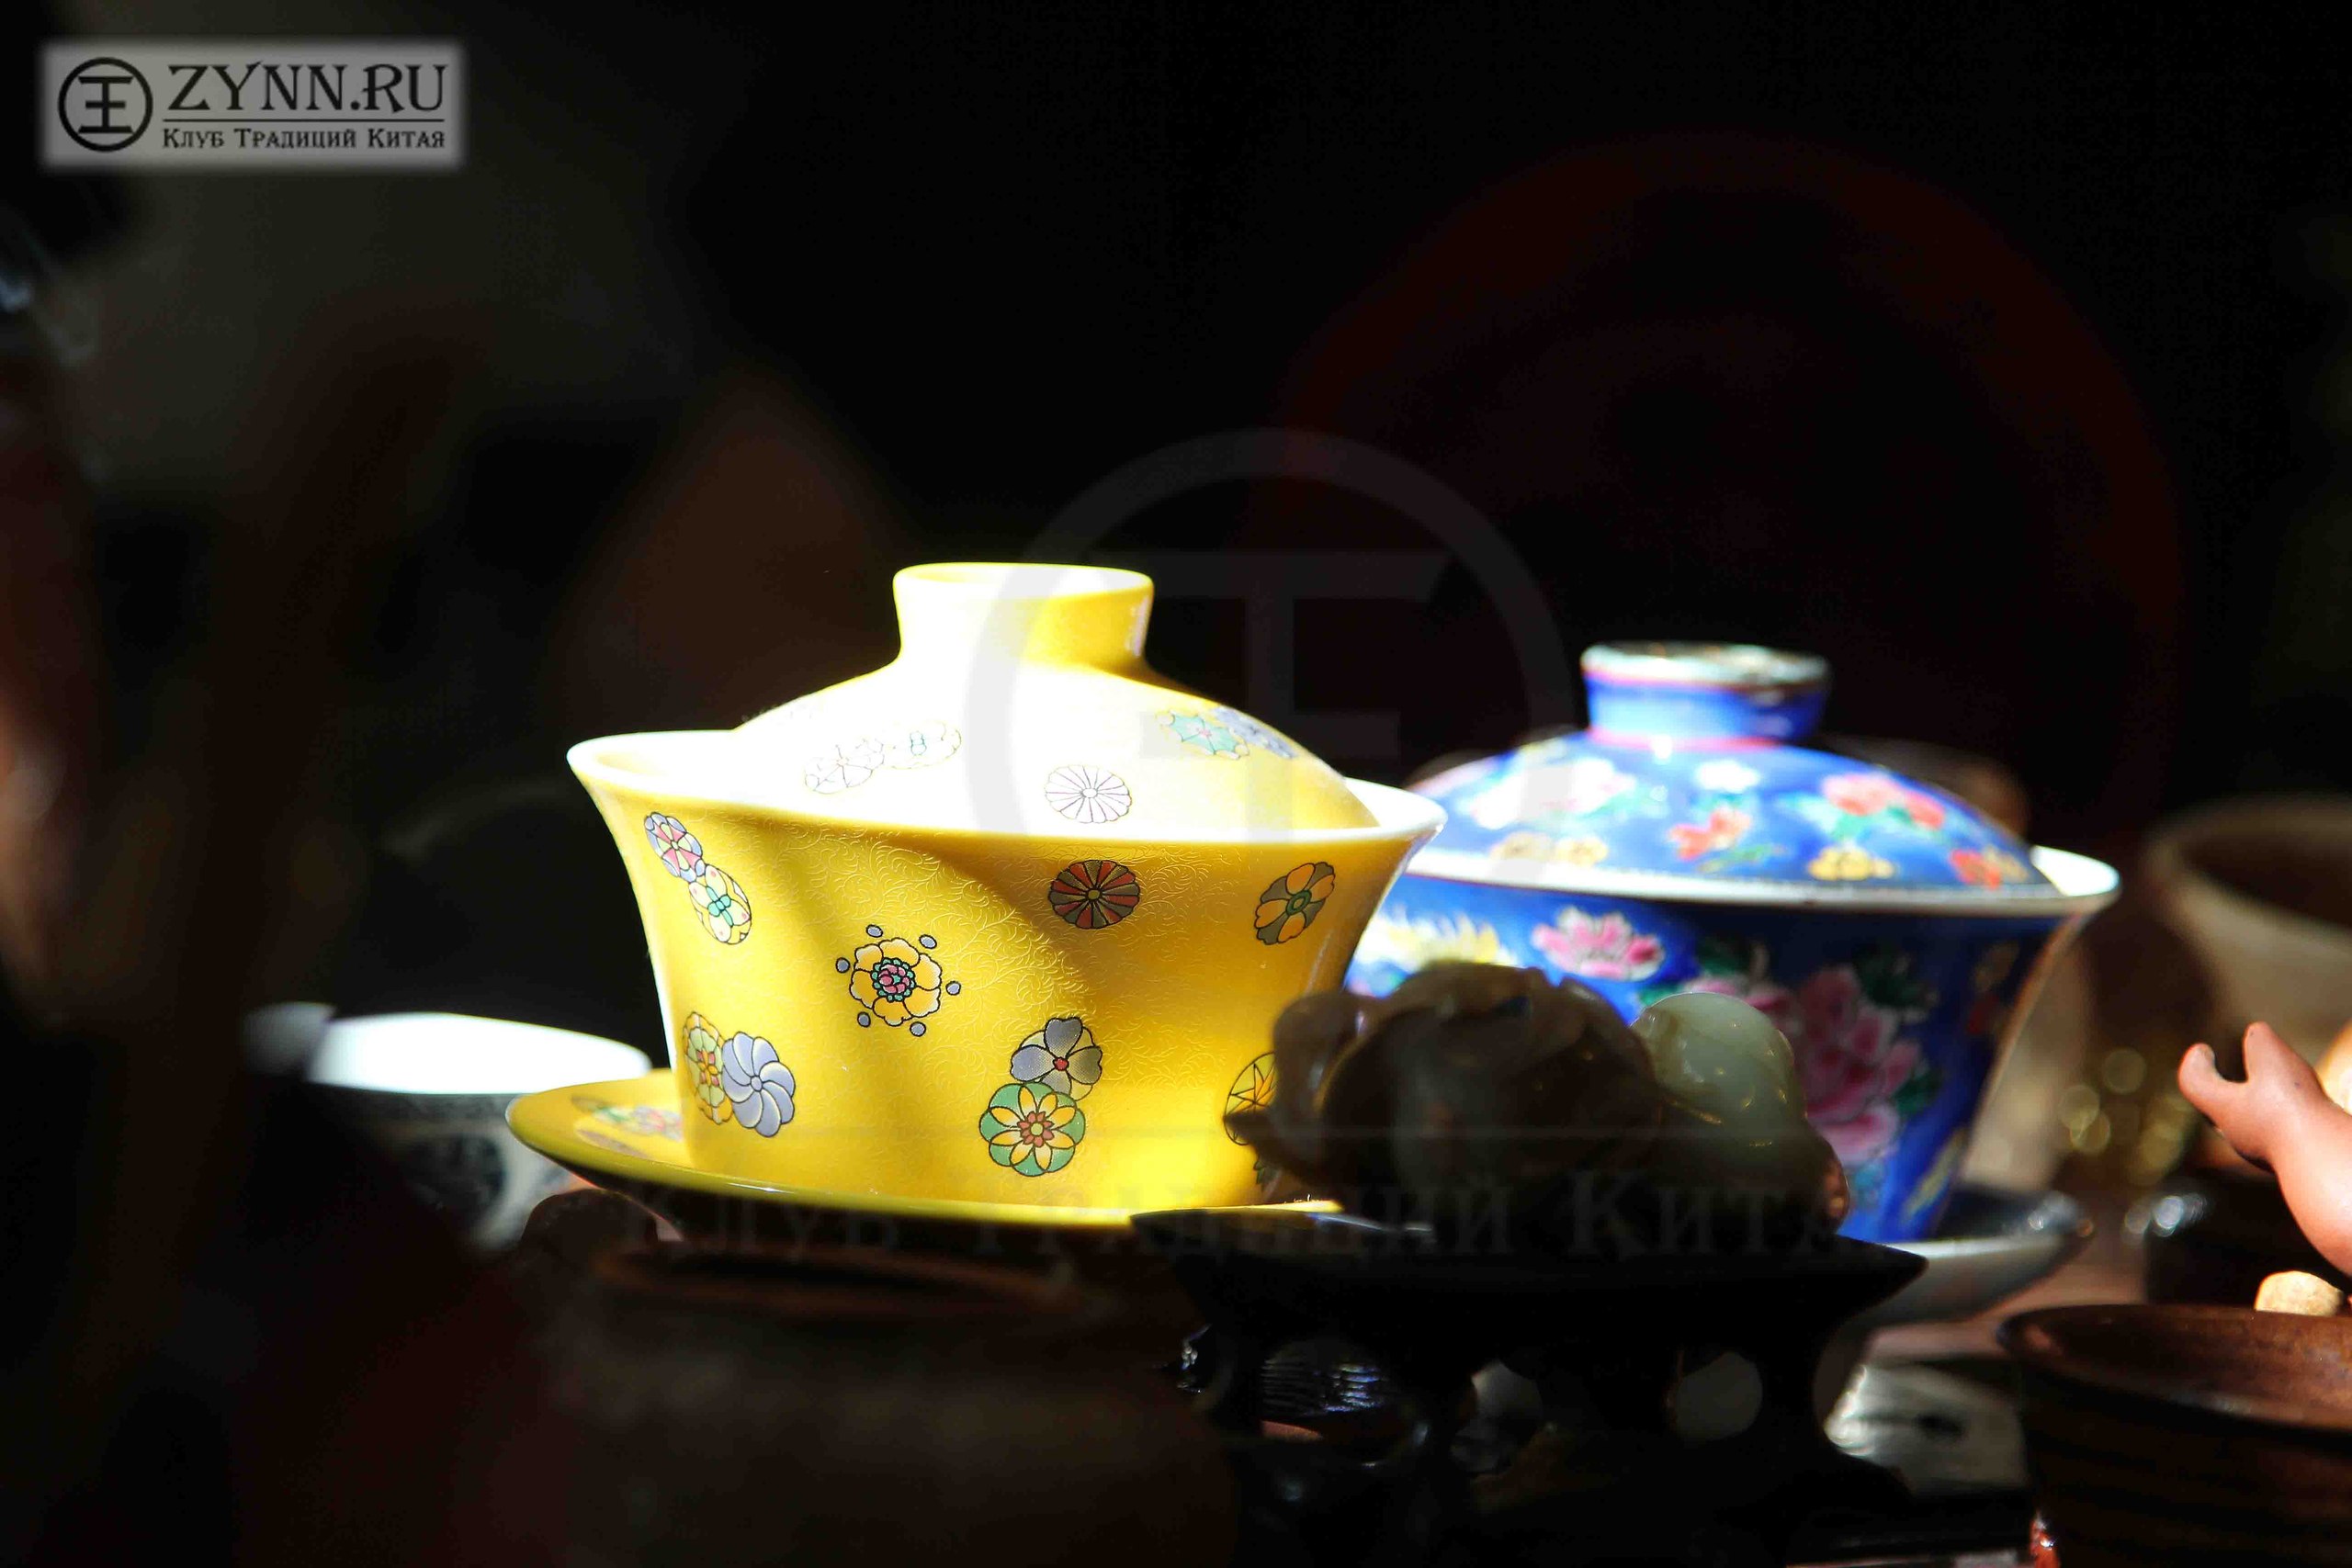 Чайная церемония в Клубе Традиций Китая